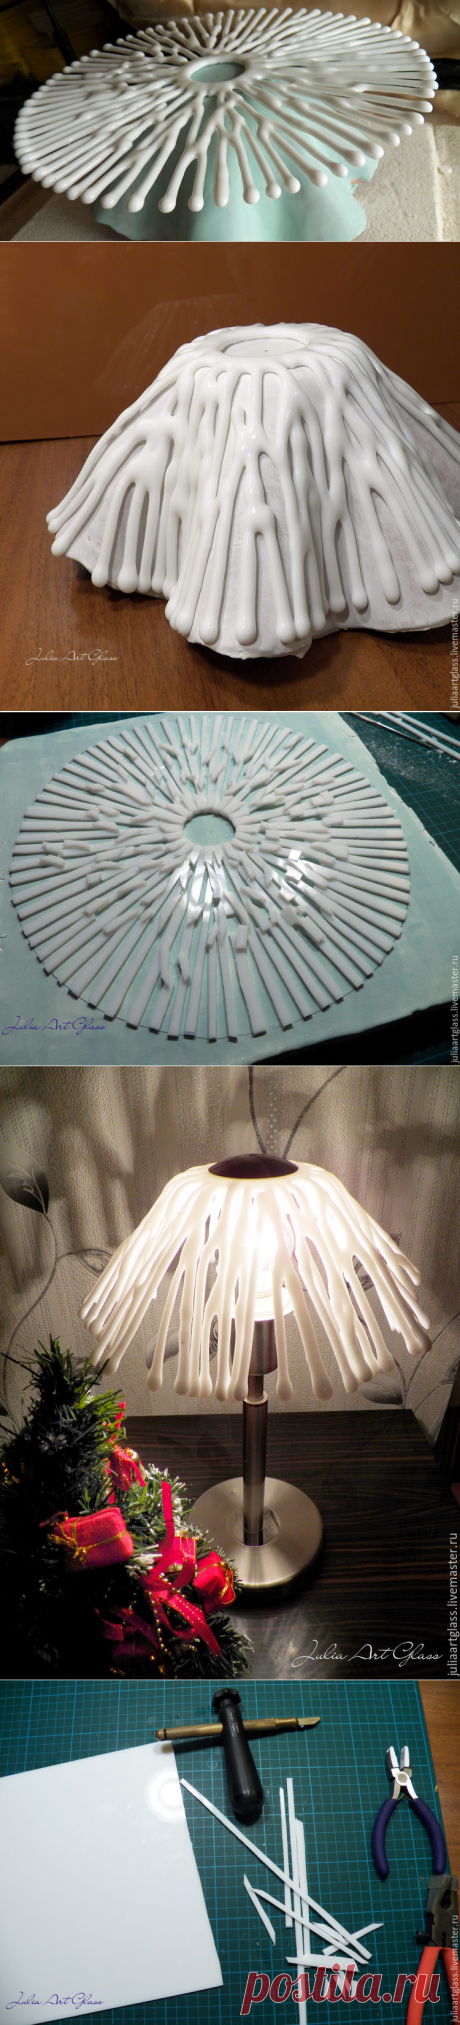 Делаем абажур для лампы в технике фьюзинг - Ярмарка Мастеров - ручная работа, handmade